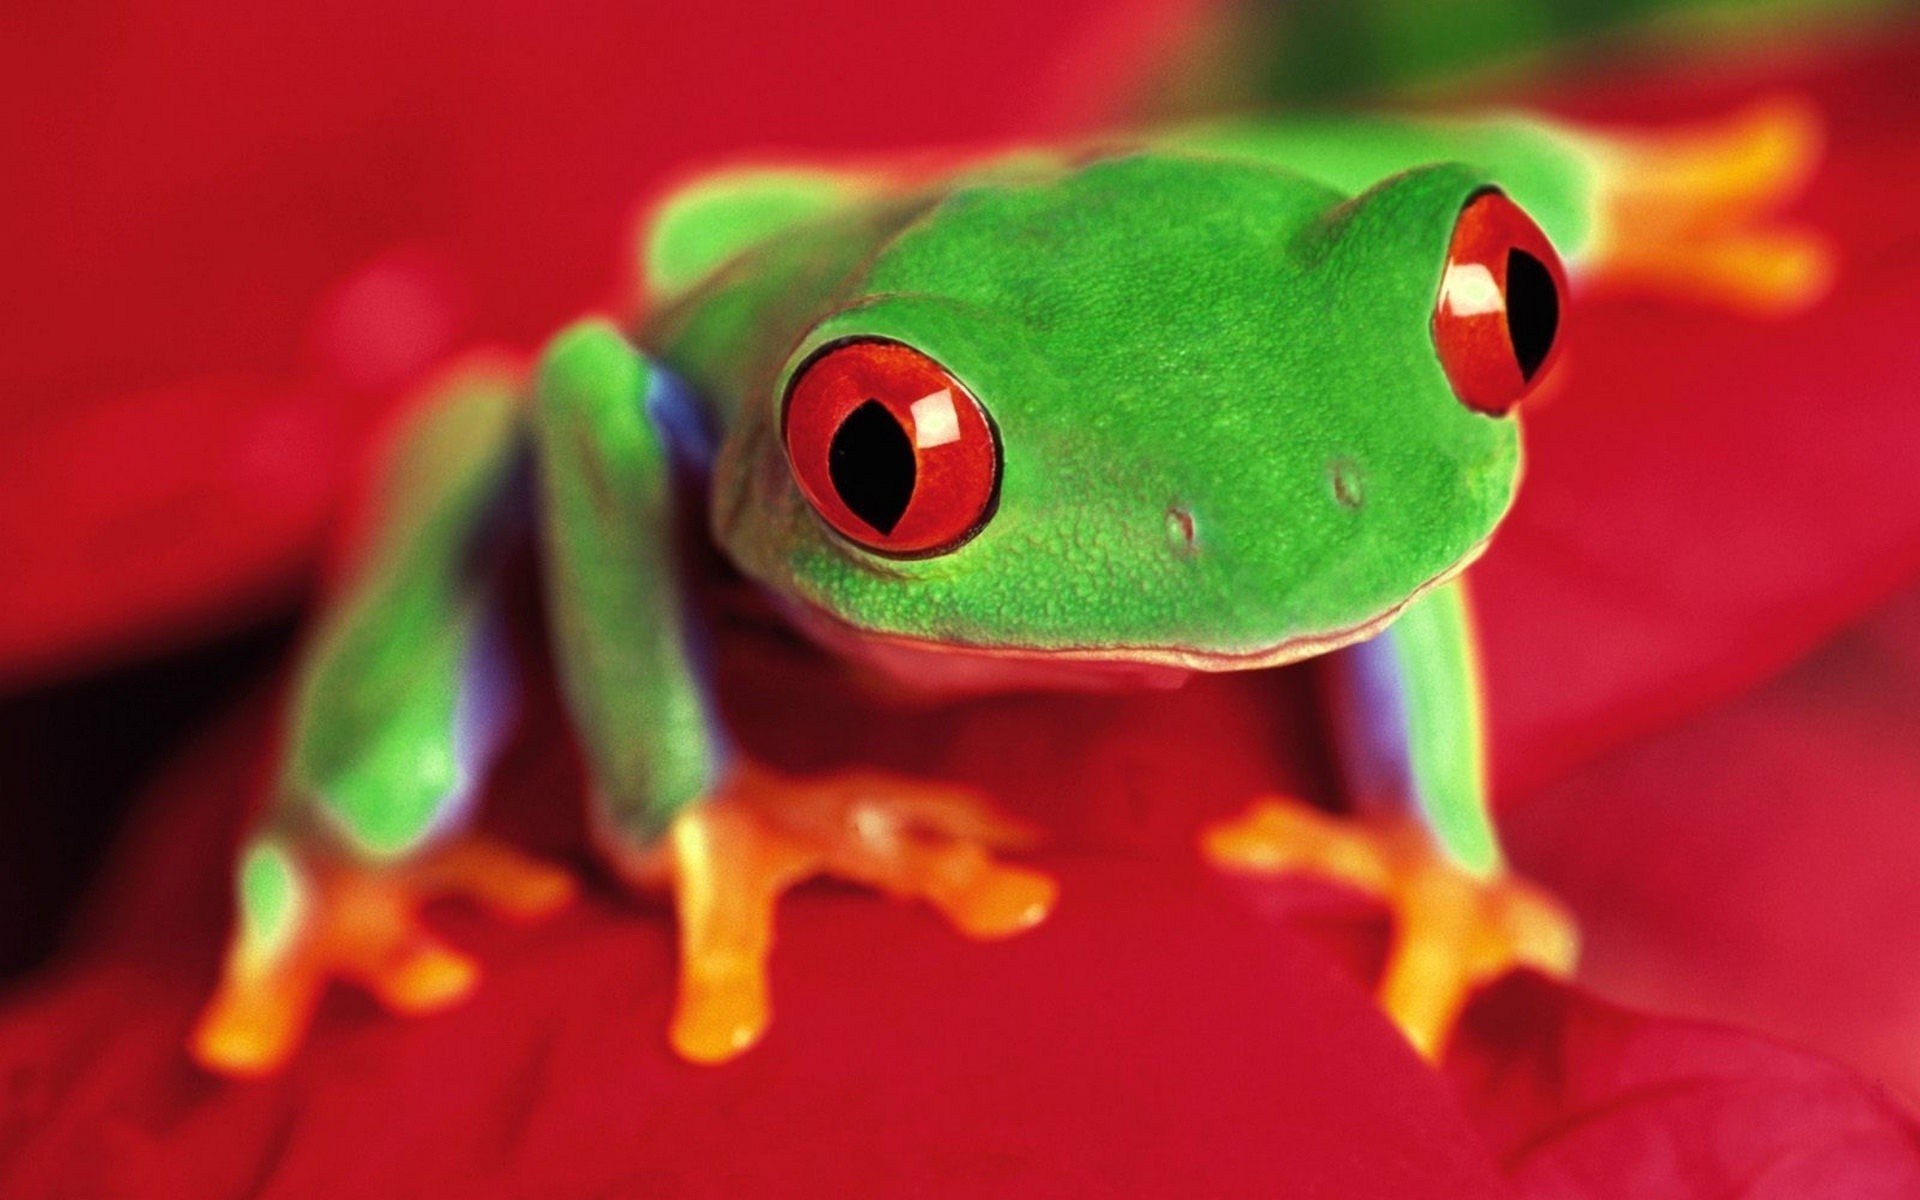 Frog closeup photo